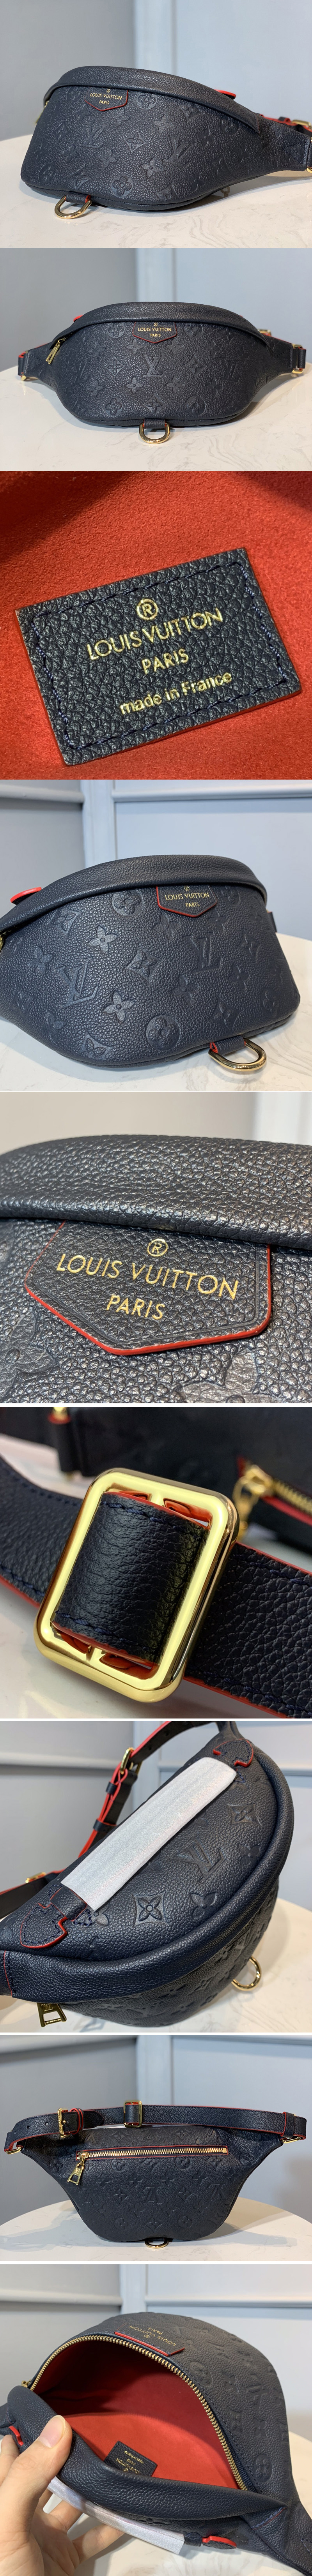 Louis Vuitton Monogram Empreinte Bumbag M44812 Cream - lushenticbags